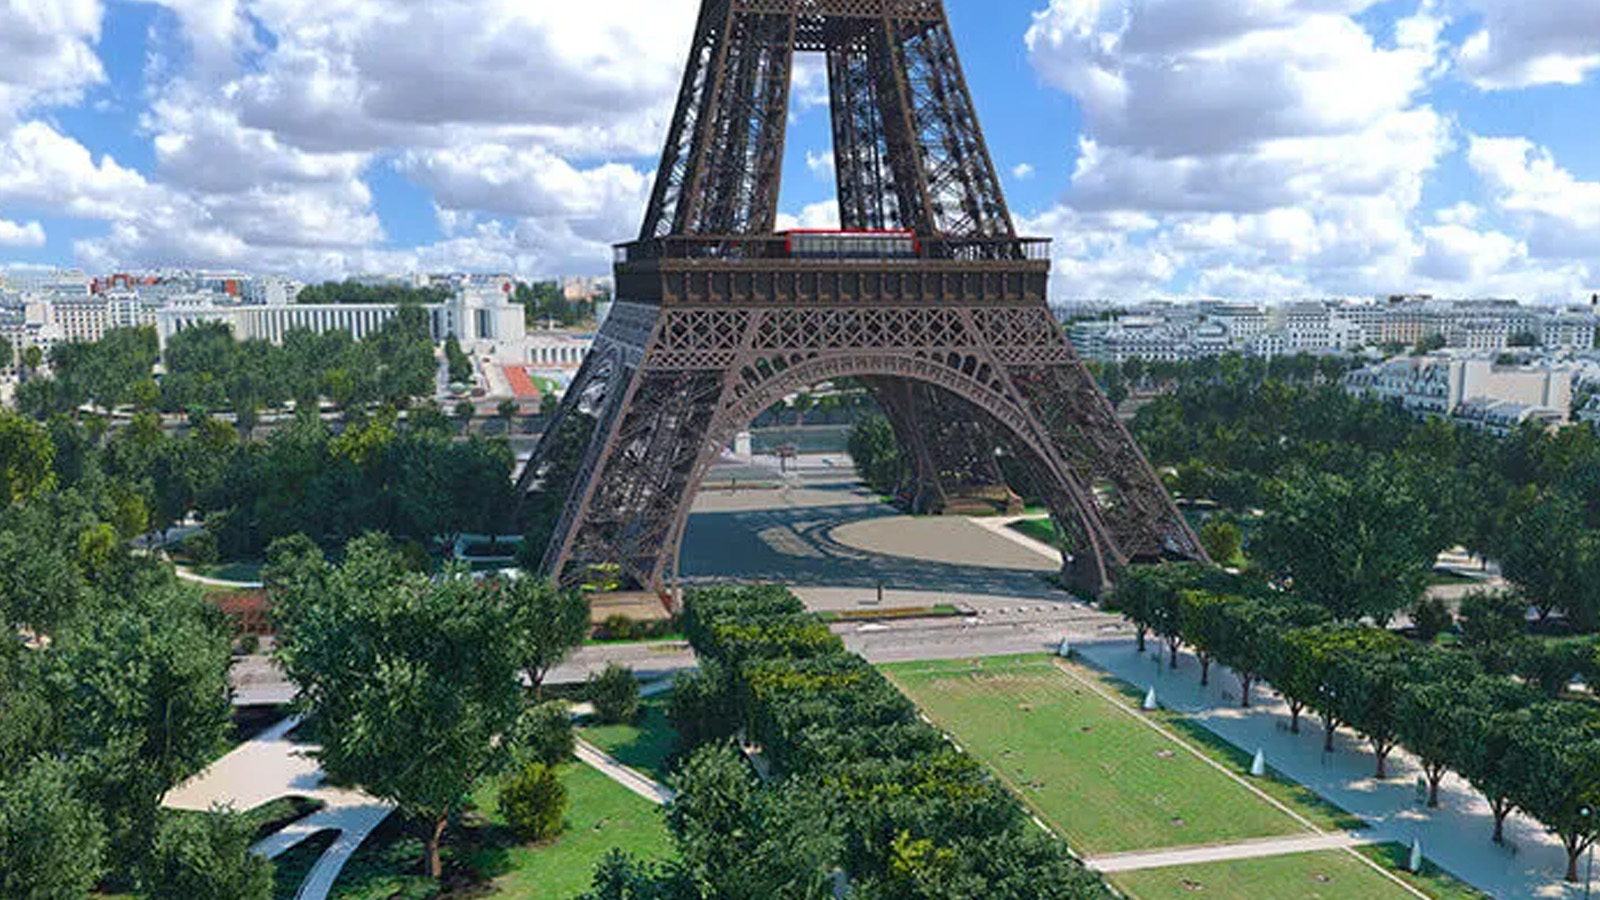 Paris 2024 Olimpiyat Oyunları sonrası Eyfel Kulesi çevresinde araç yasağı gündeme getirildi